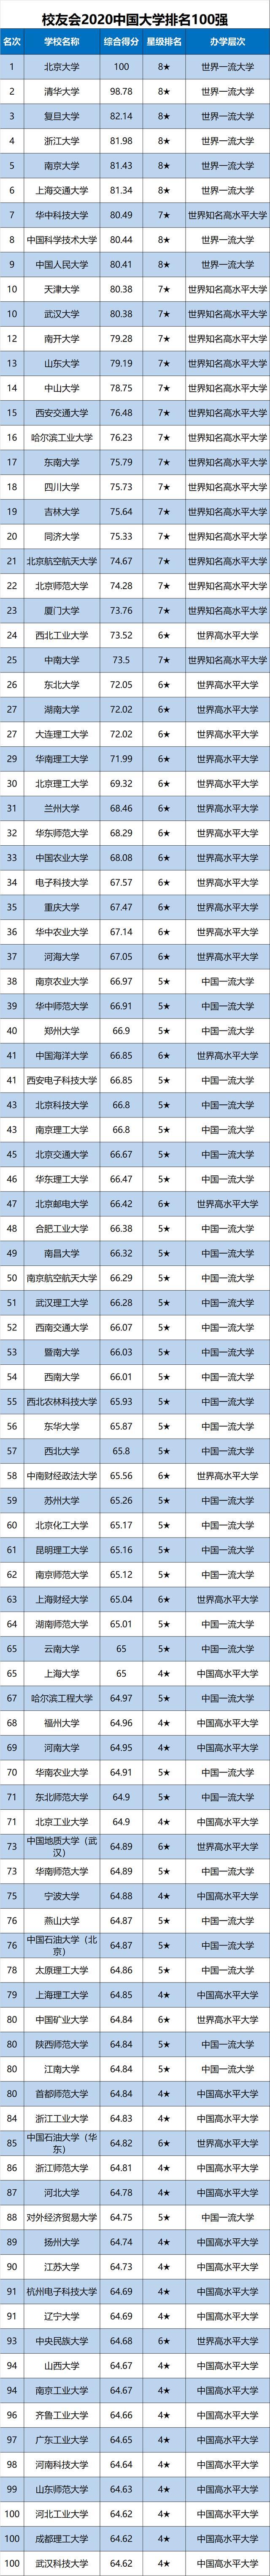 超强榜单!中国大学排名640强出炉,你心仪的大学都在这儿